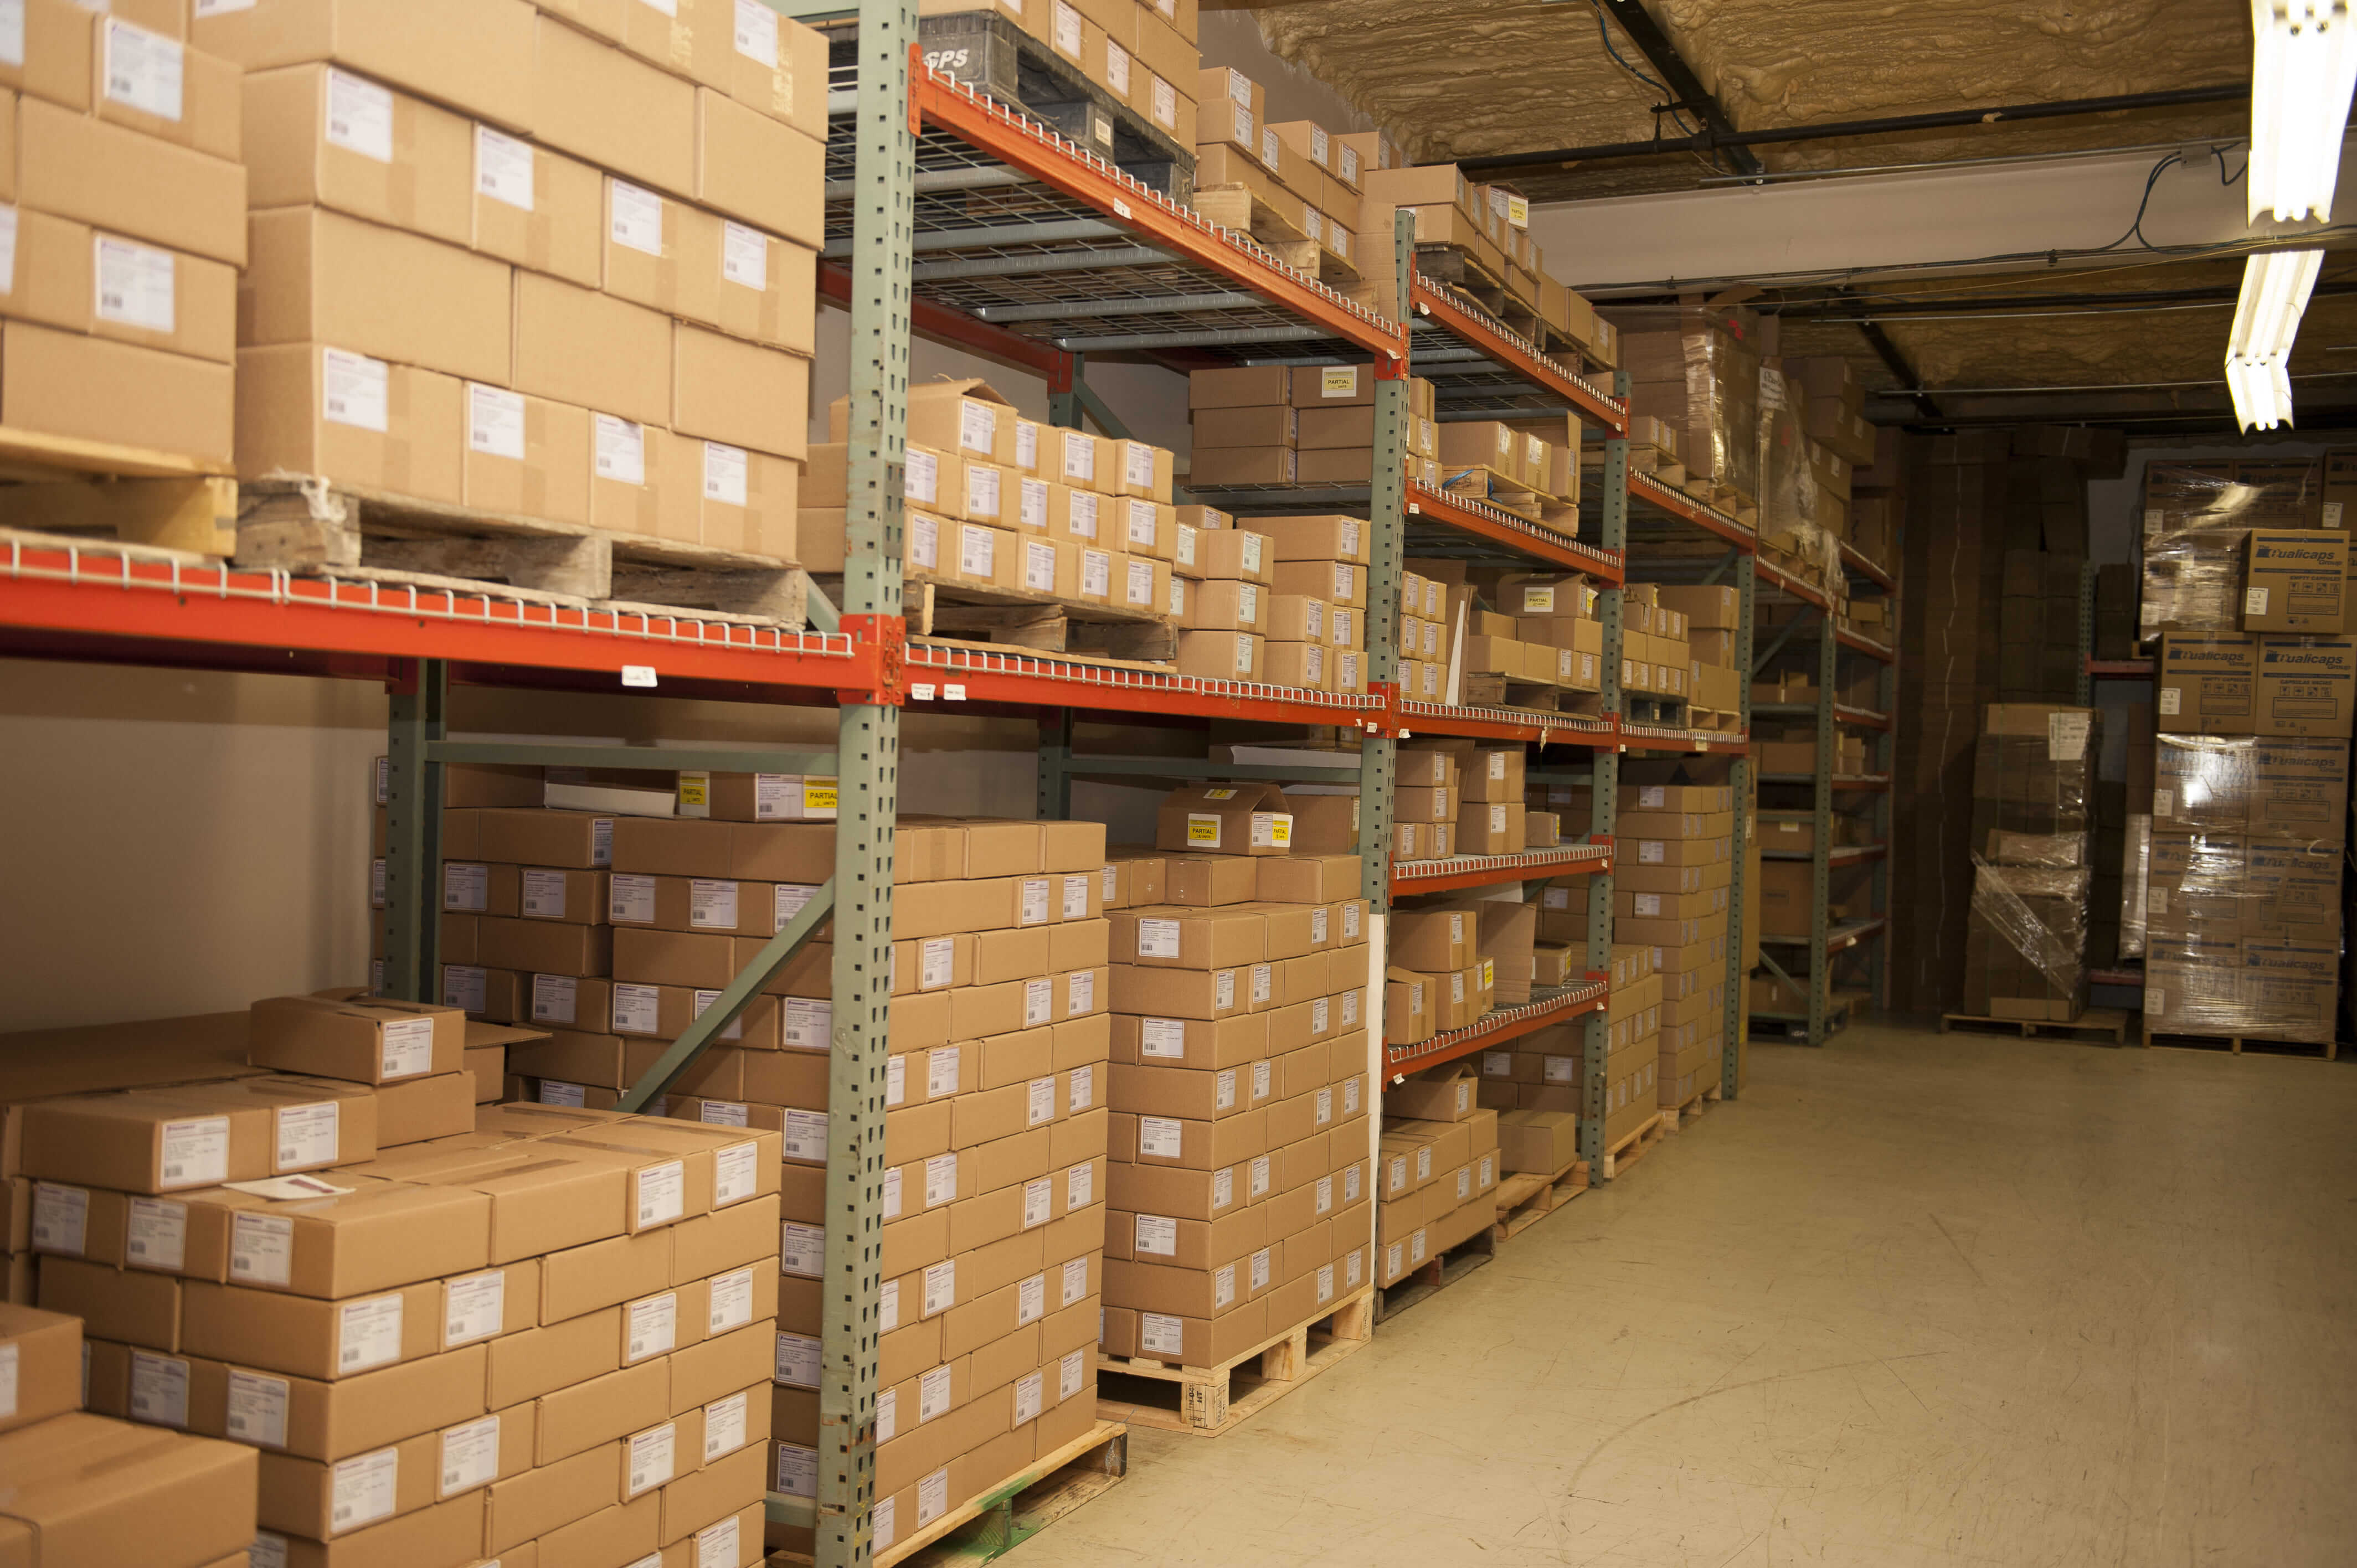 Shelves of product inside Pharbest warehouse